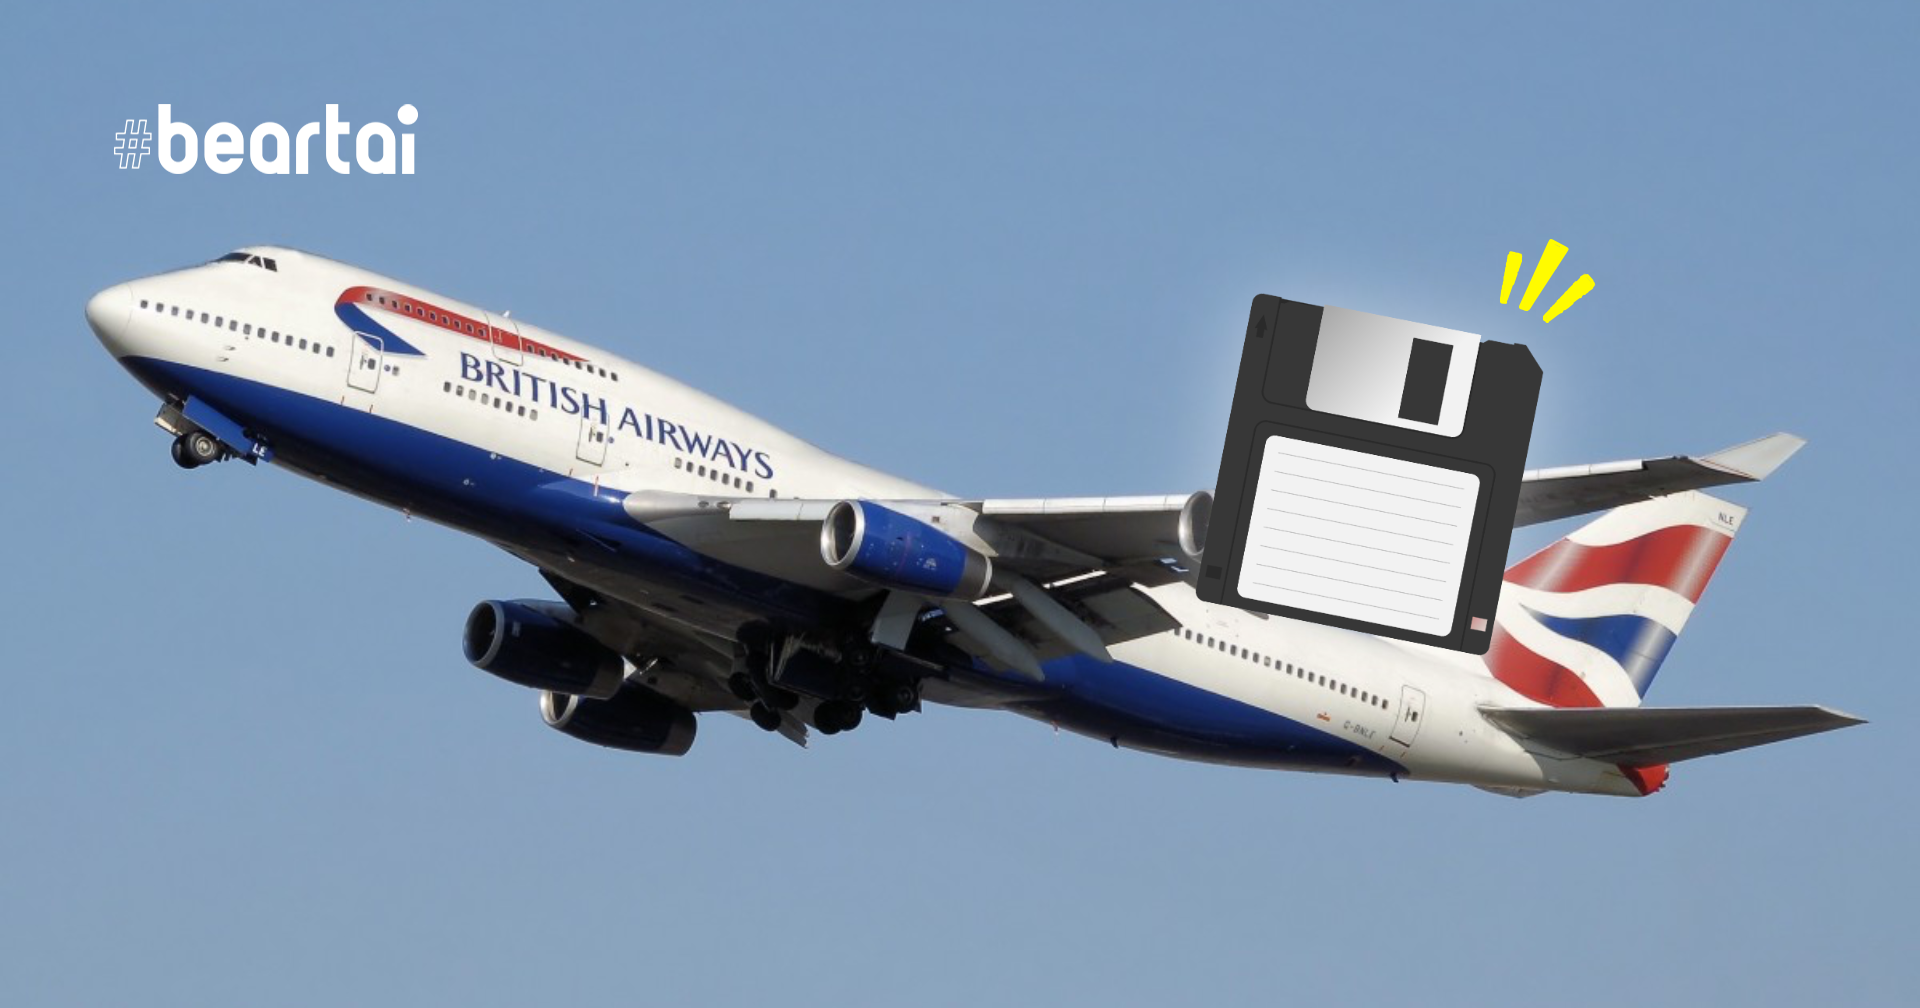 นี่ก็ปี 2021 แล้ว แต่เครื่องบิน Boeing ยังใช้ Floppy Disk ในการอัปเดตซอฟต์แวร์อยู่เลยล่ะ